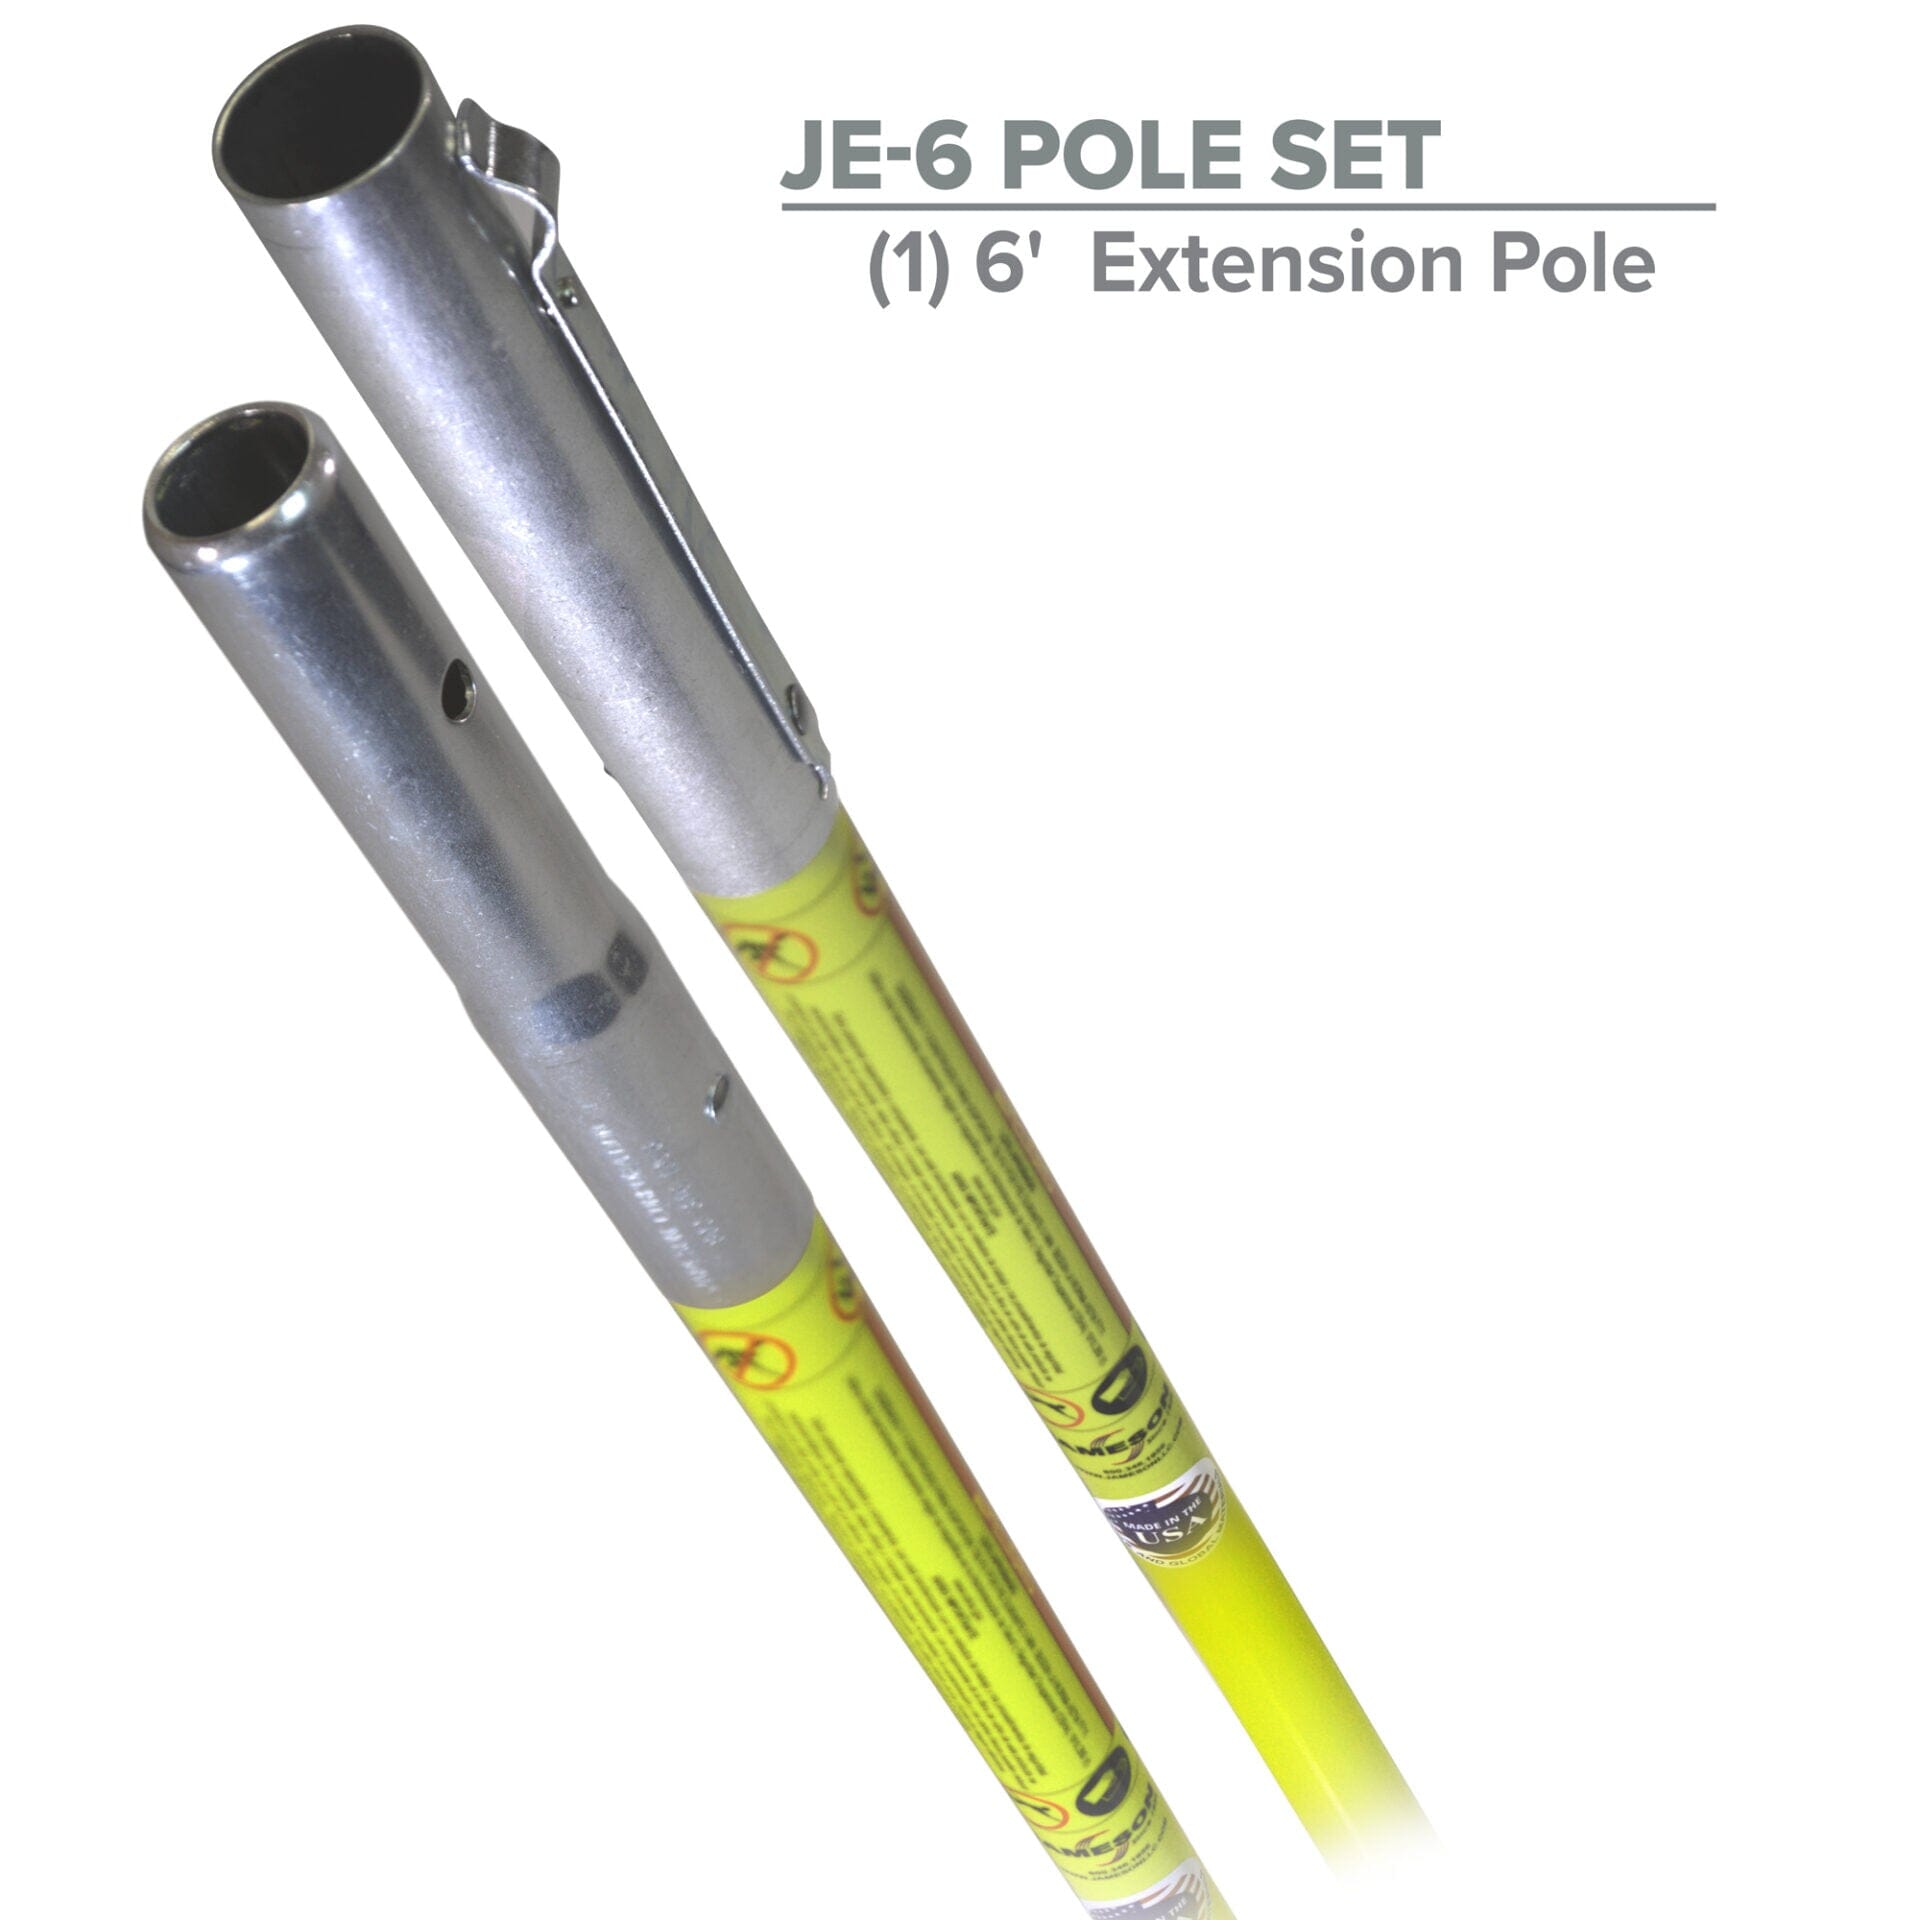 Jameson Foam Core Extension Pole 6' Fiberglass Poles - JE-6